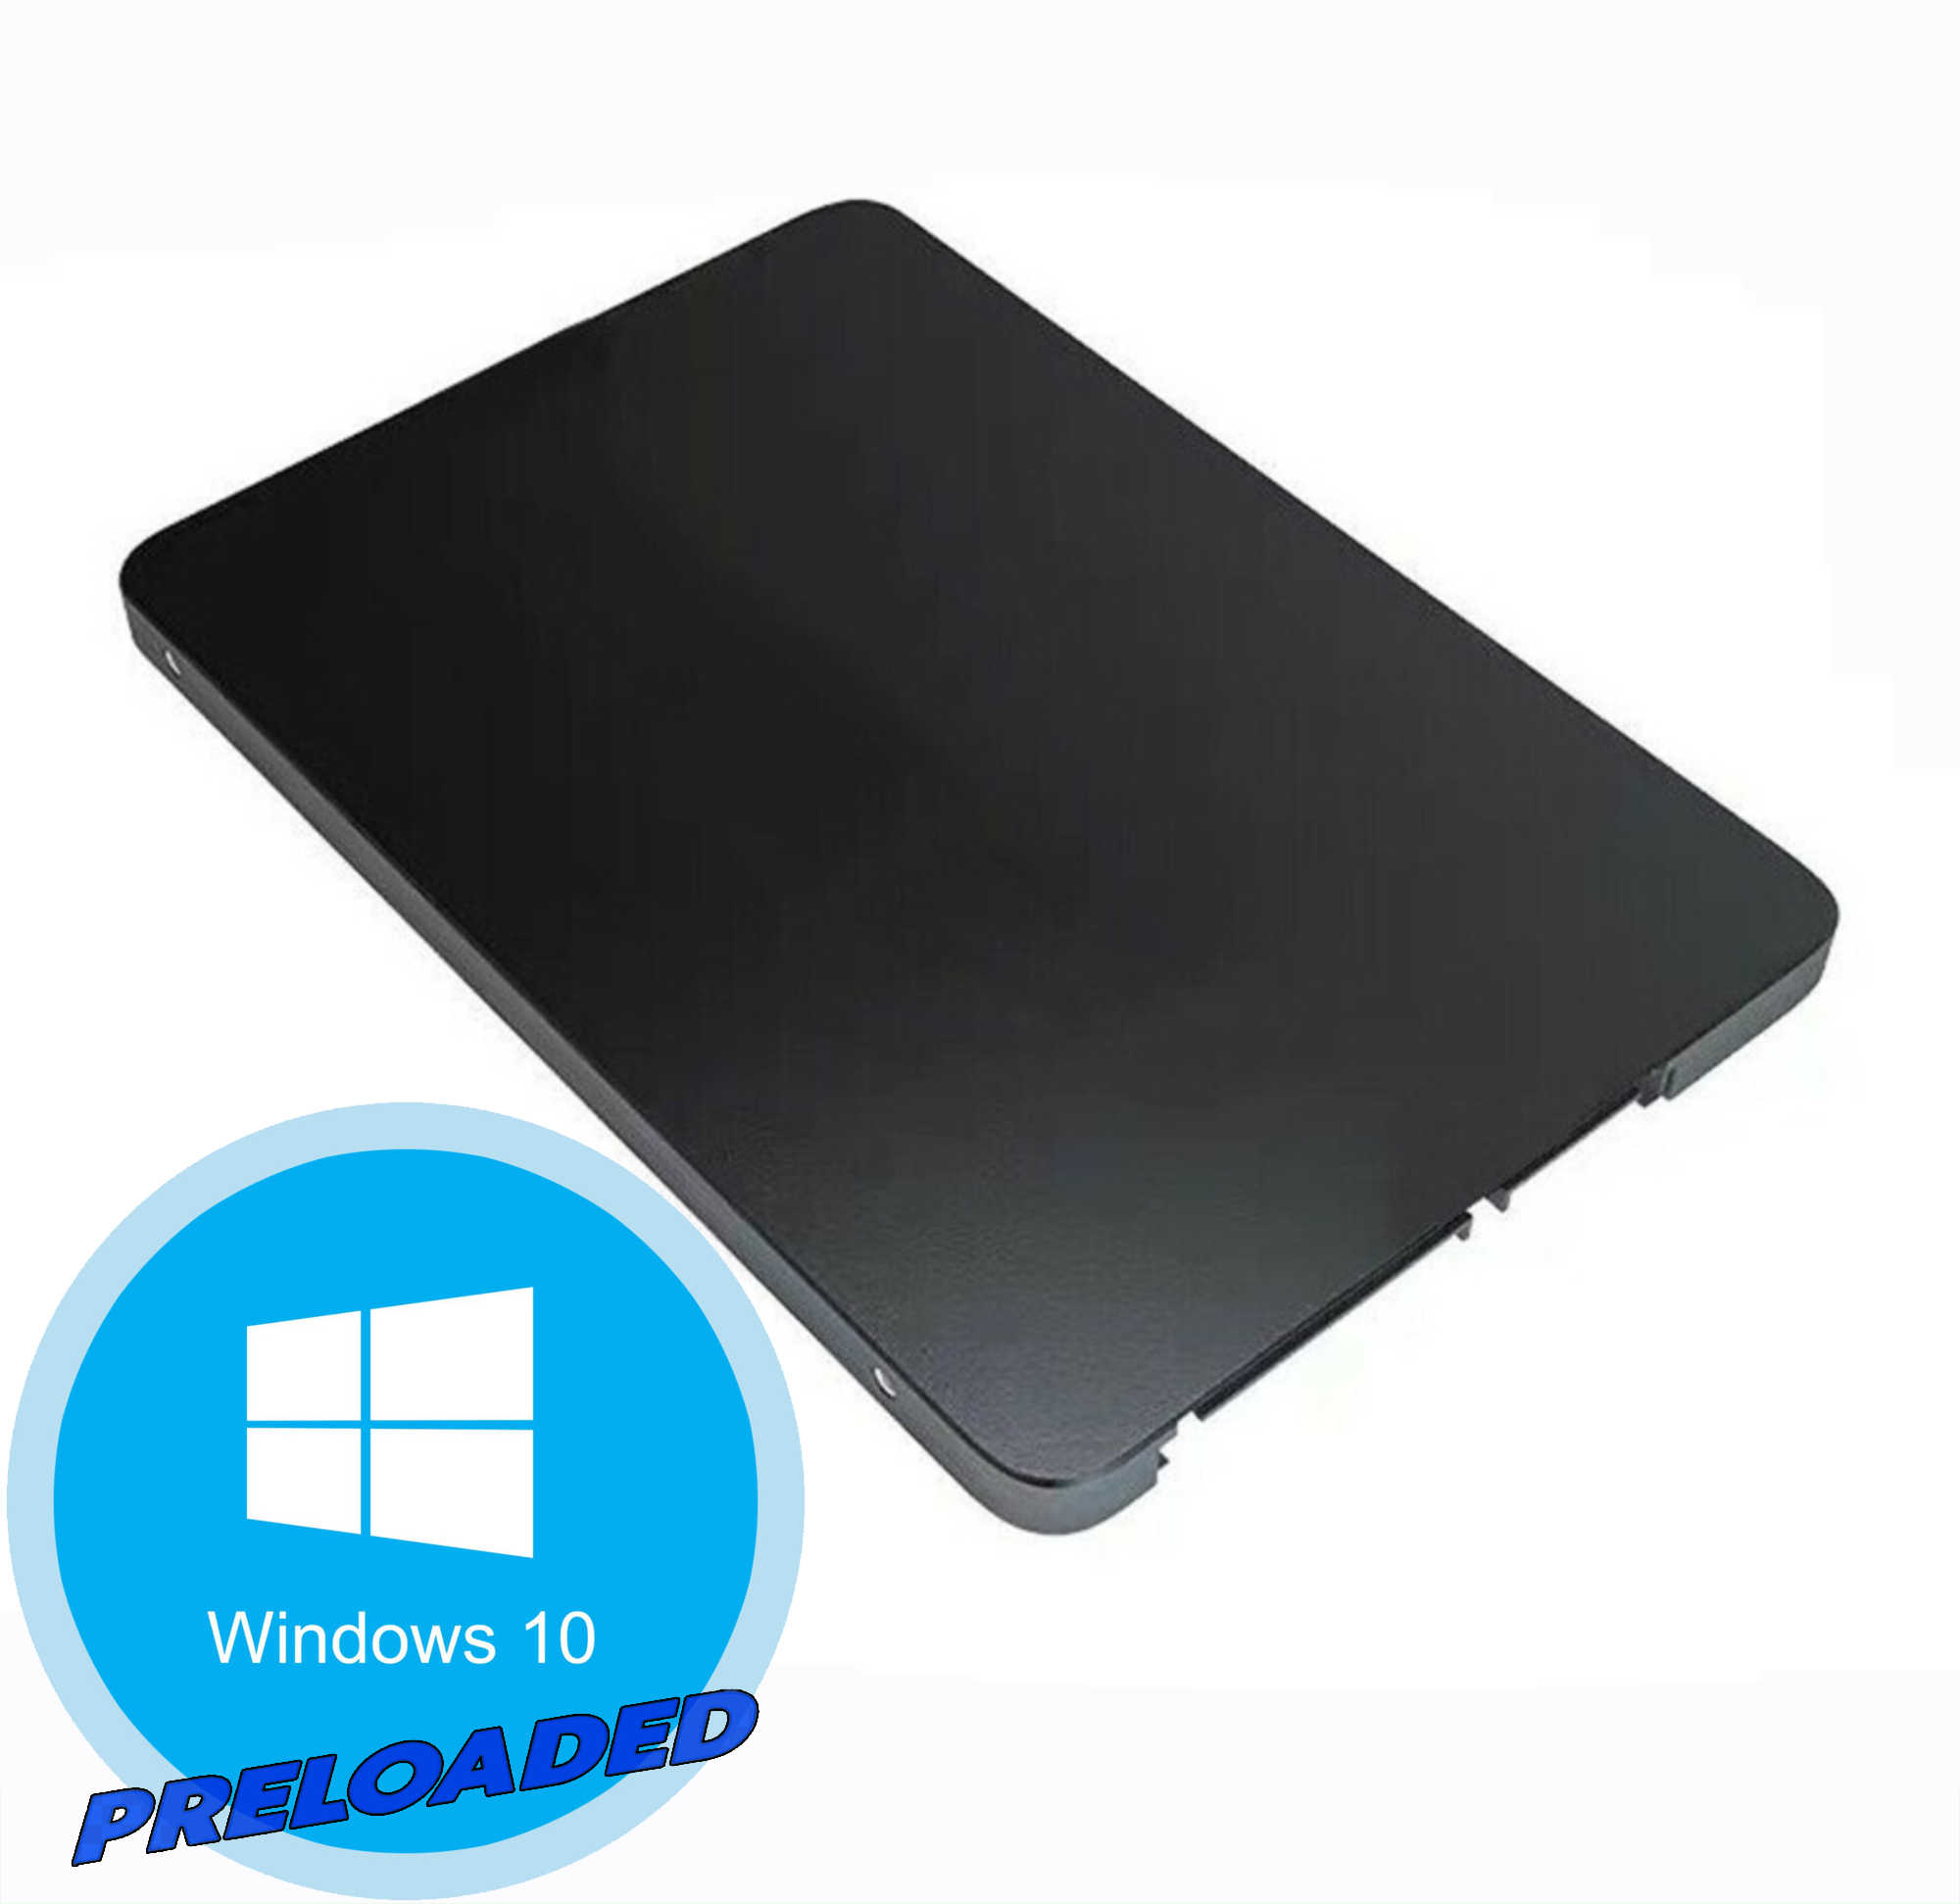 SSD - SATA III | 256 GB | 2.5 Inch from PUSKILL